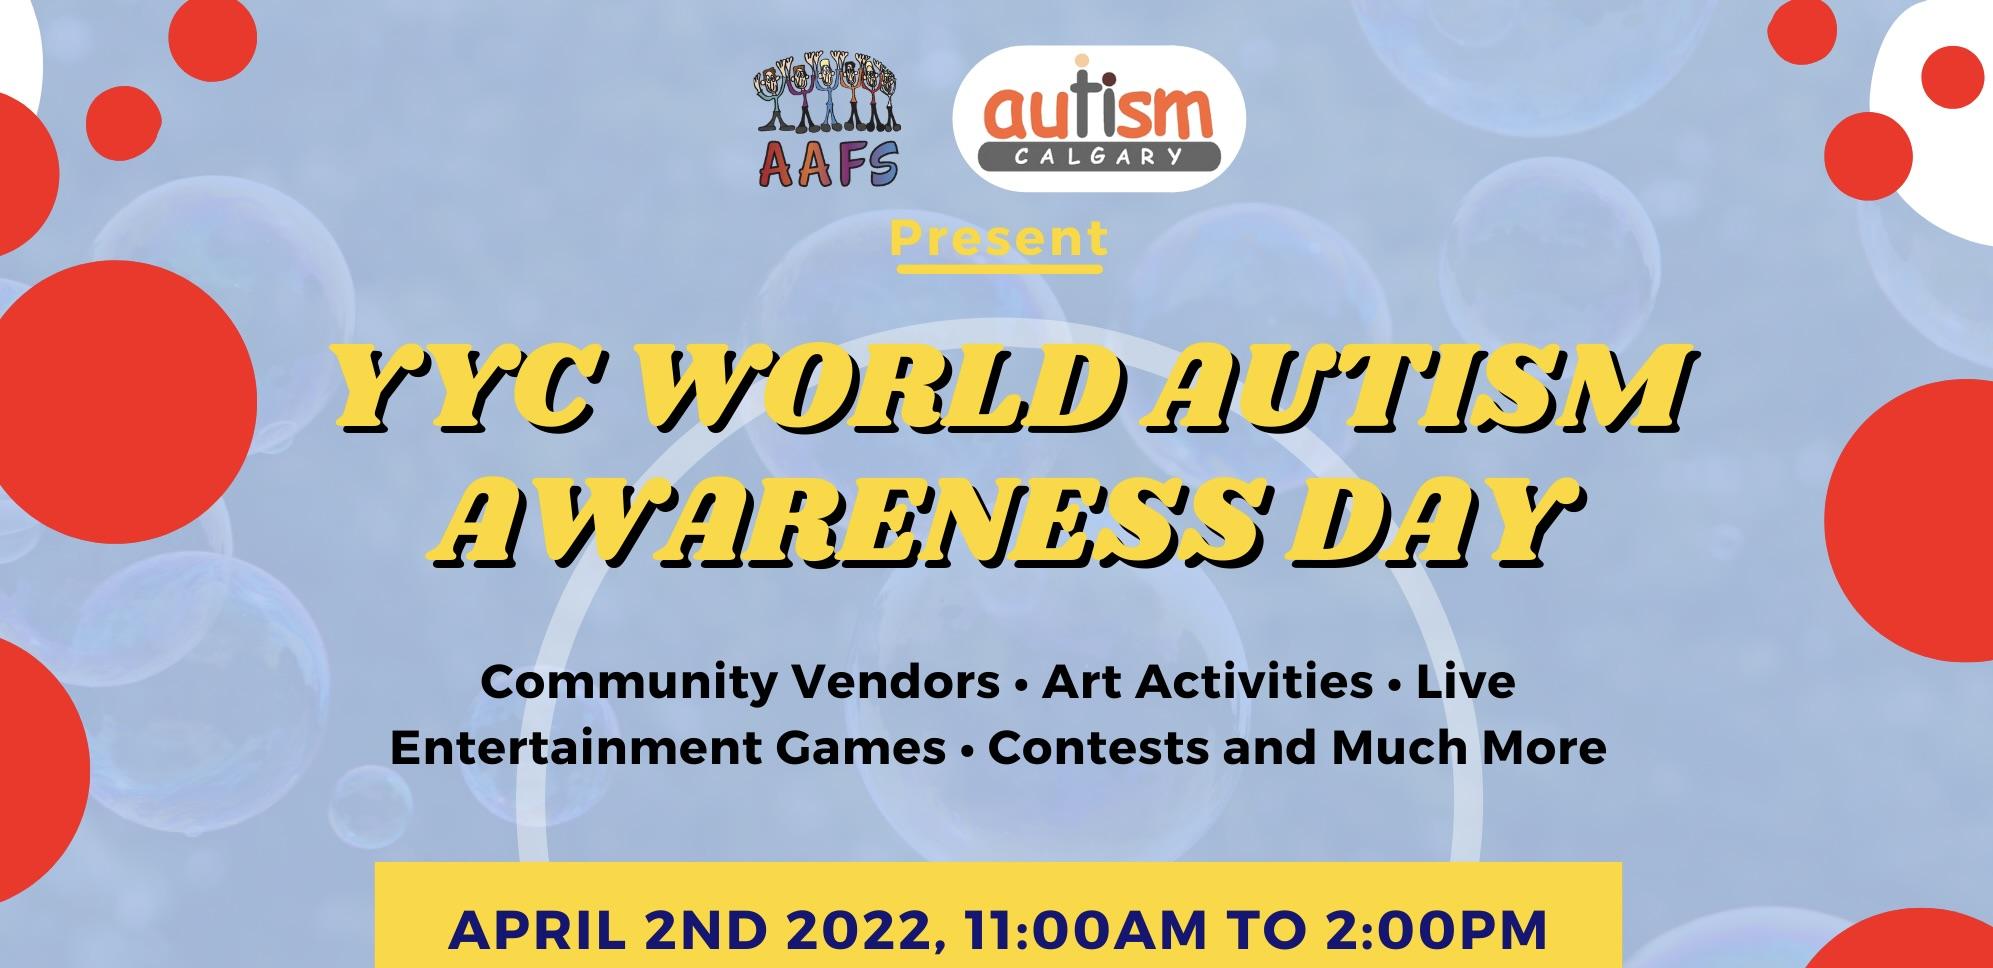 World autism acceptance day, autism,